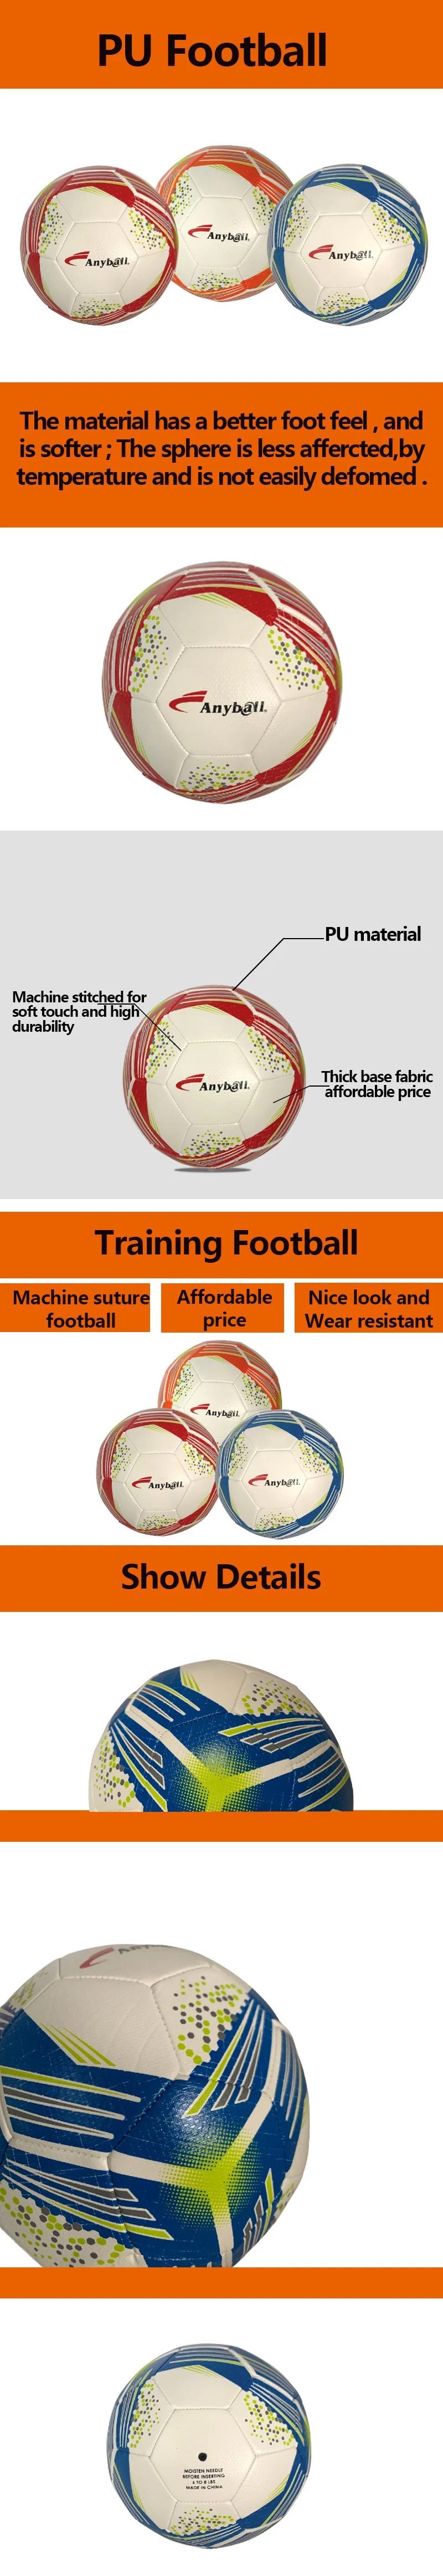 Footballs Ball Training International Clubs Soccer Balls Match Activity